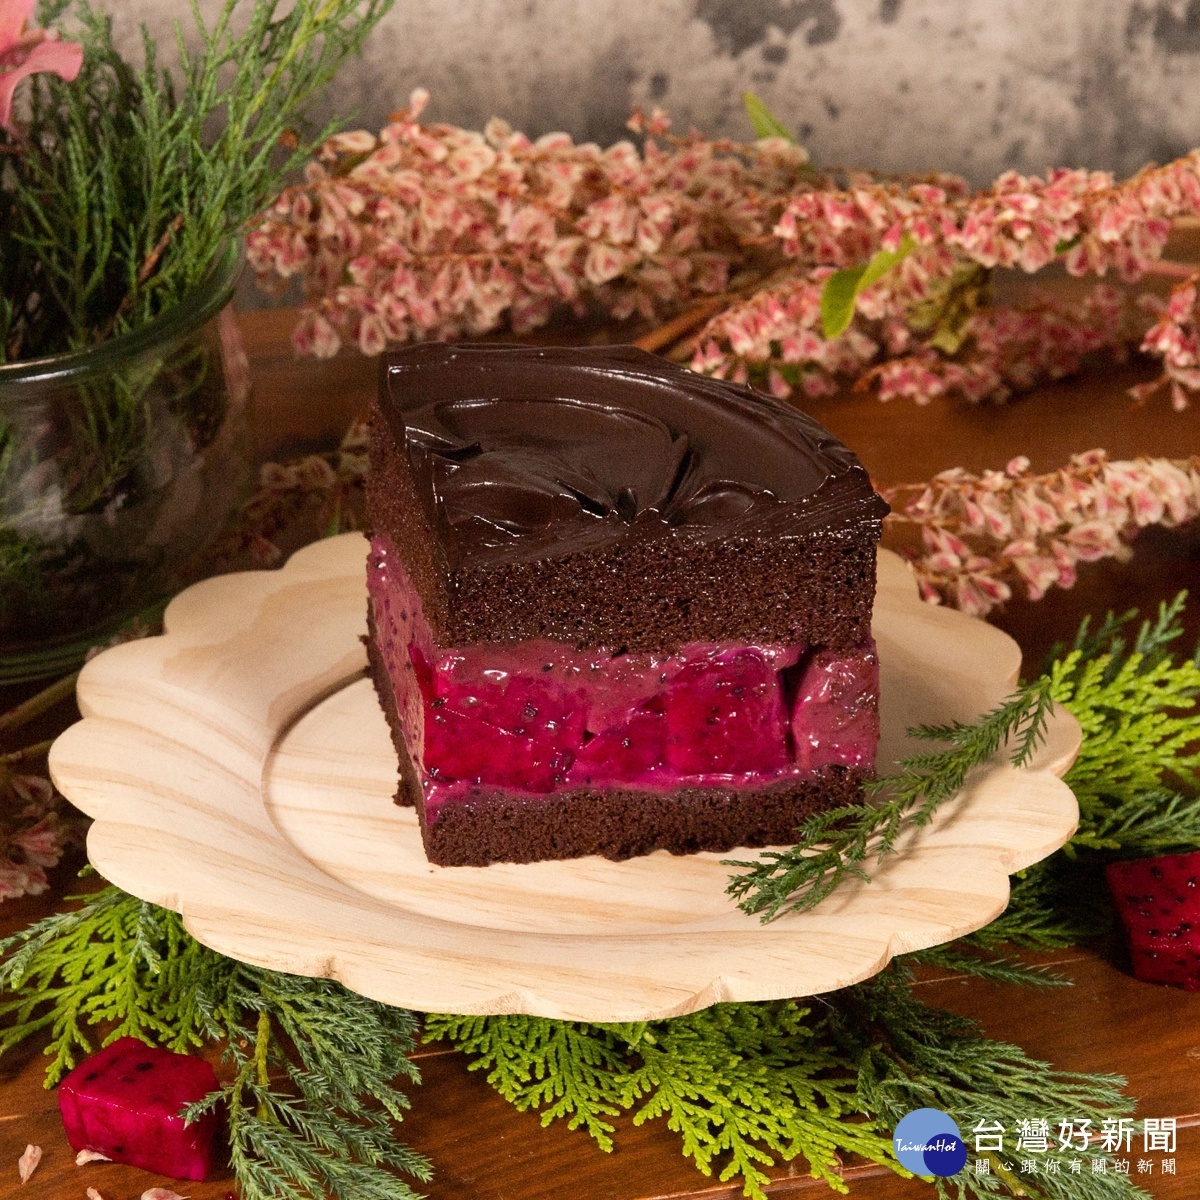 野莓慕斯夾餡飽含覆盆子、黑醋栗以及荔枝，三種水果交織成酸酸甜甜有如戀愛般的滋味。